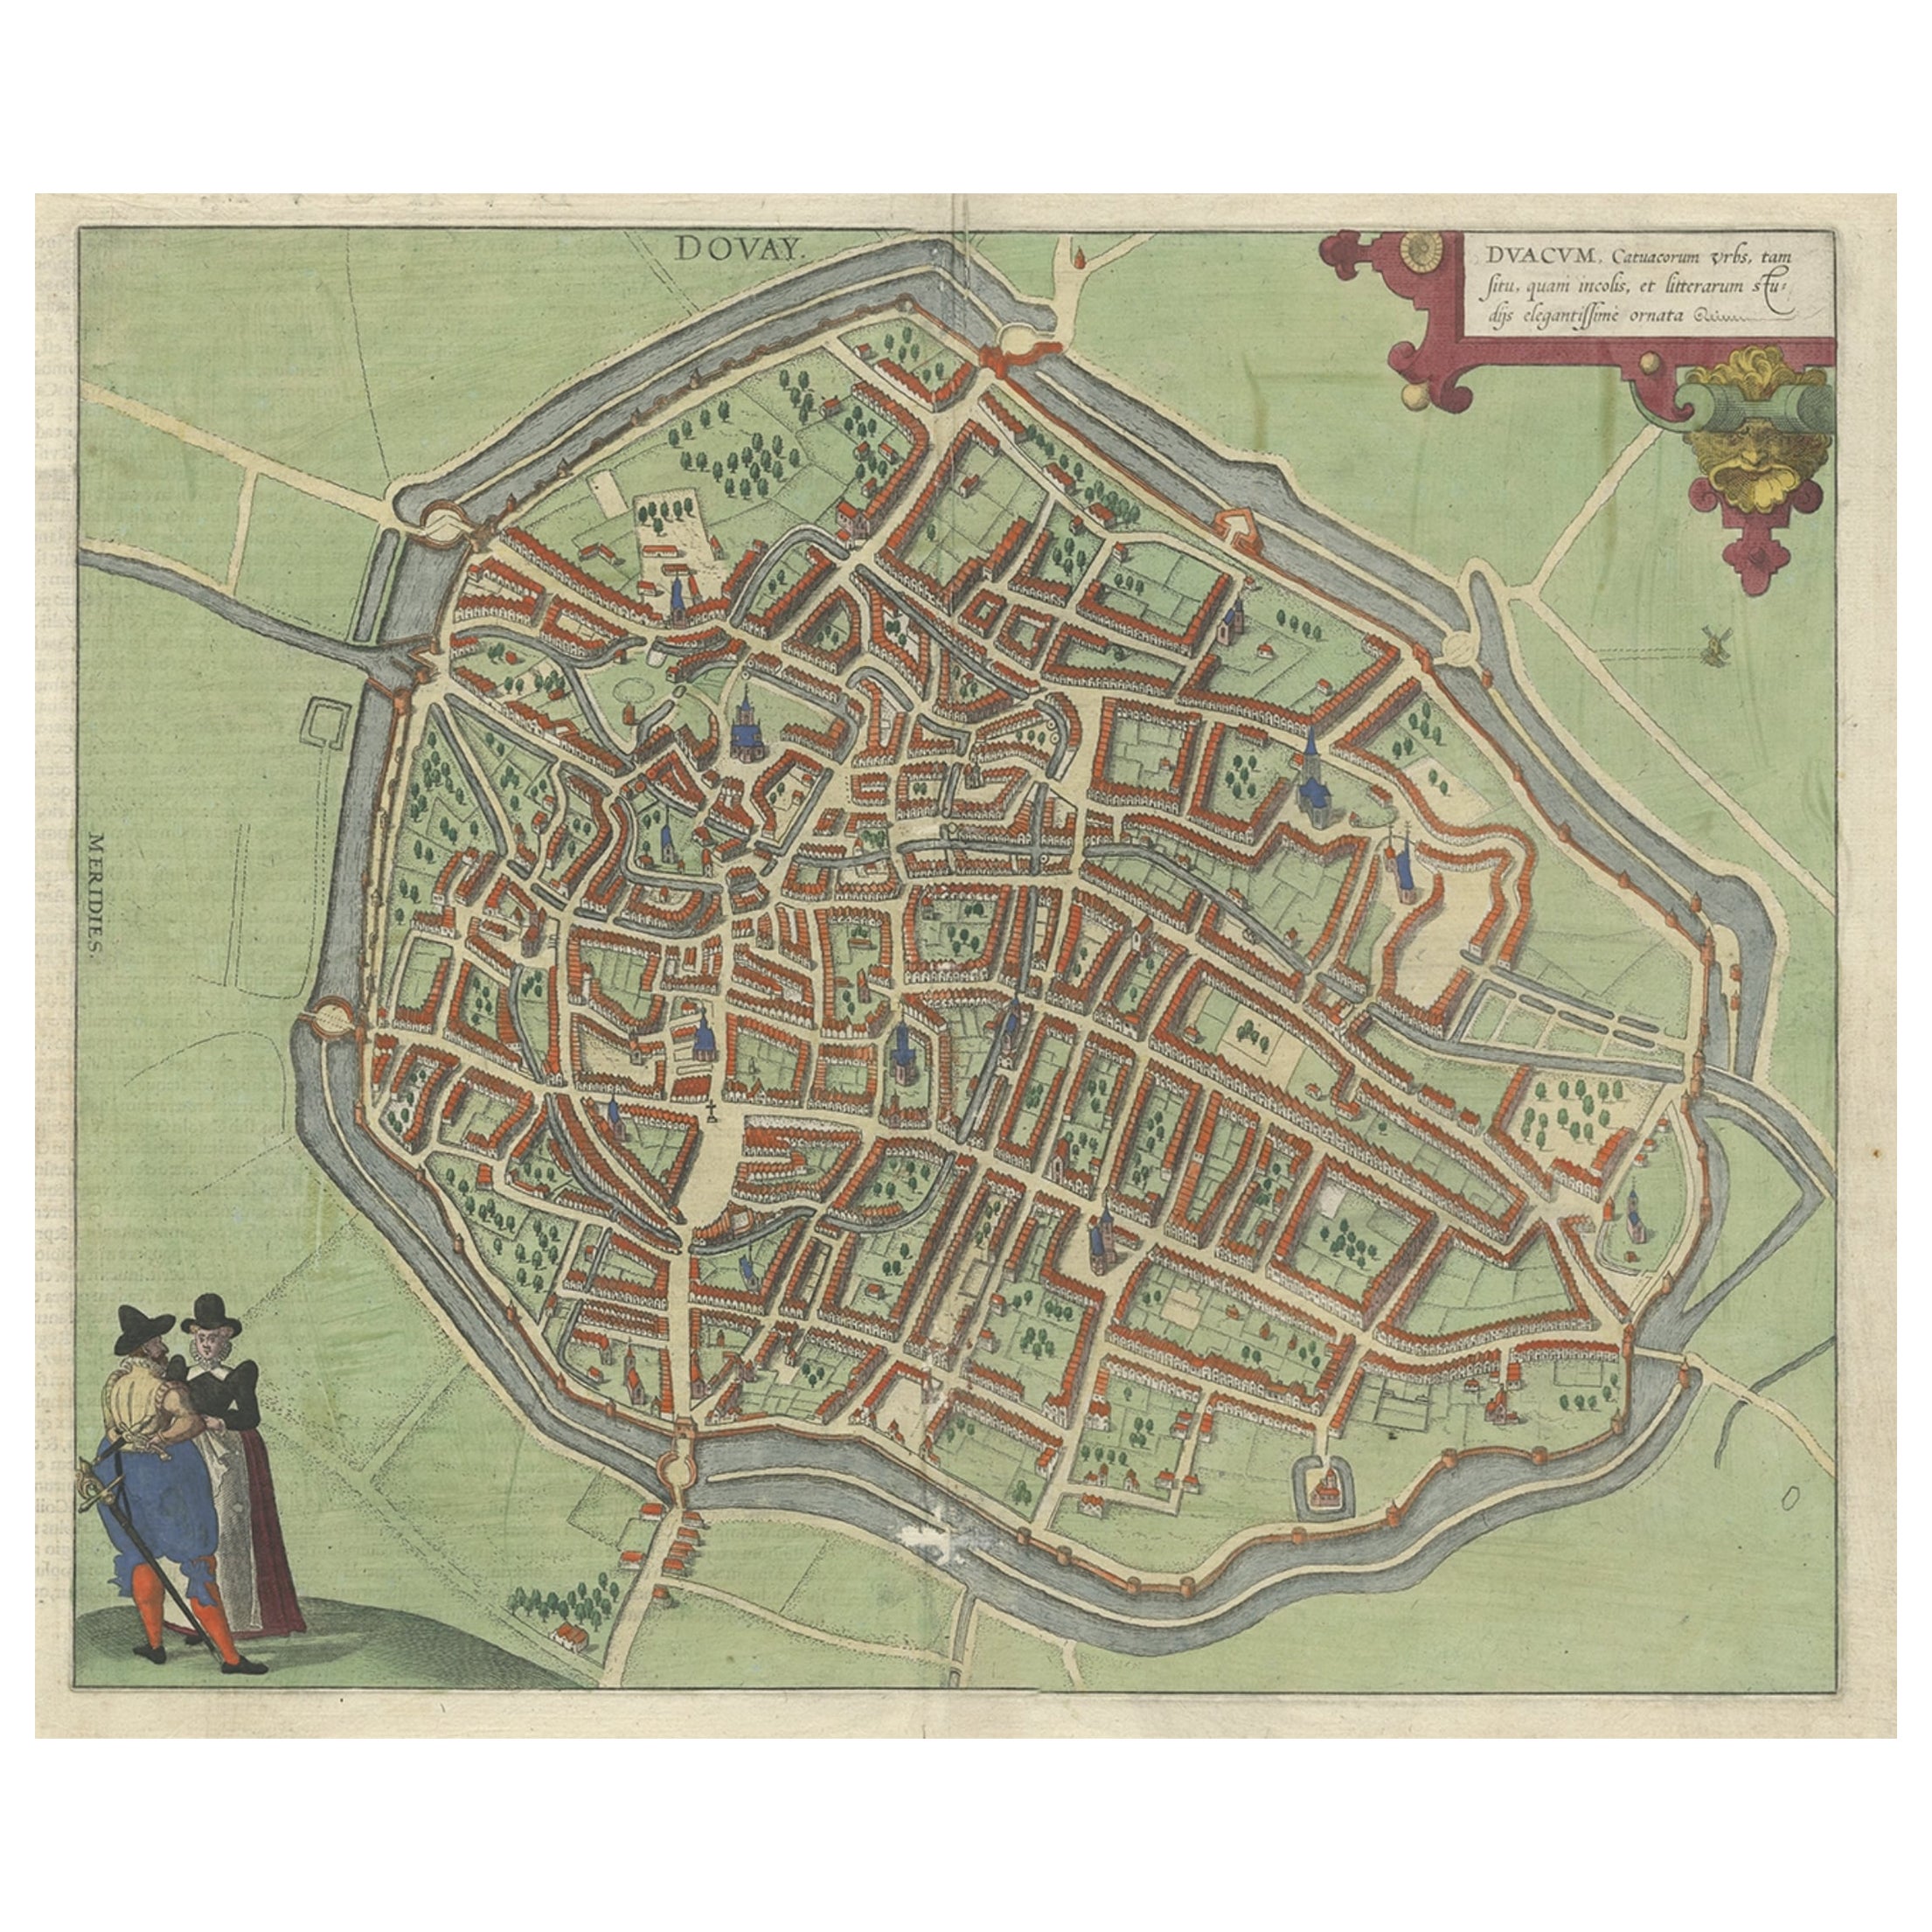 Très vieille carte ancienne originale de la ville de Douai en France, vers 1575